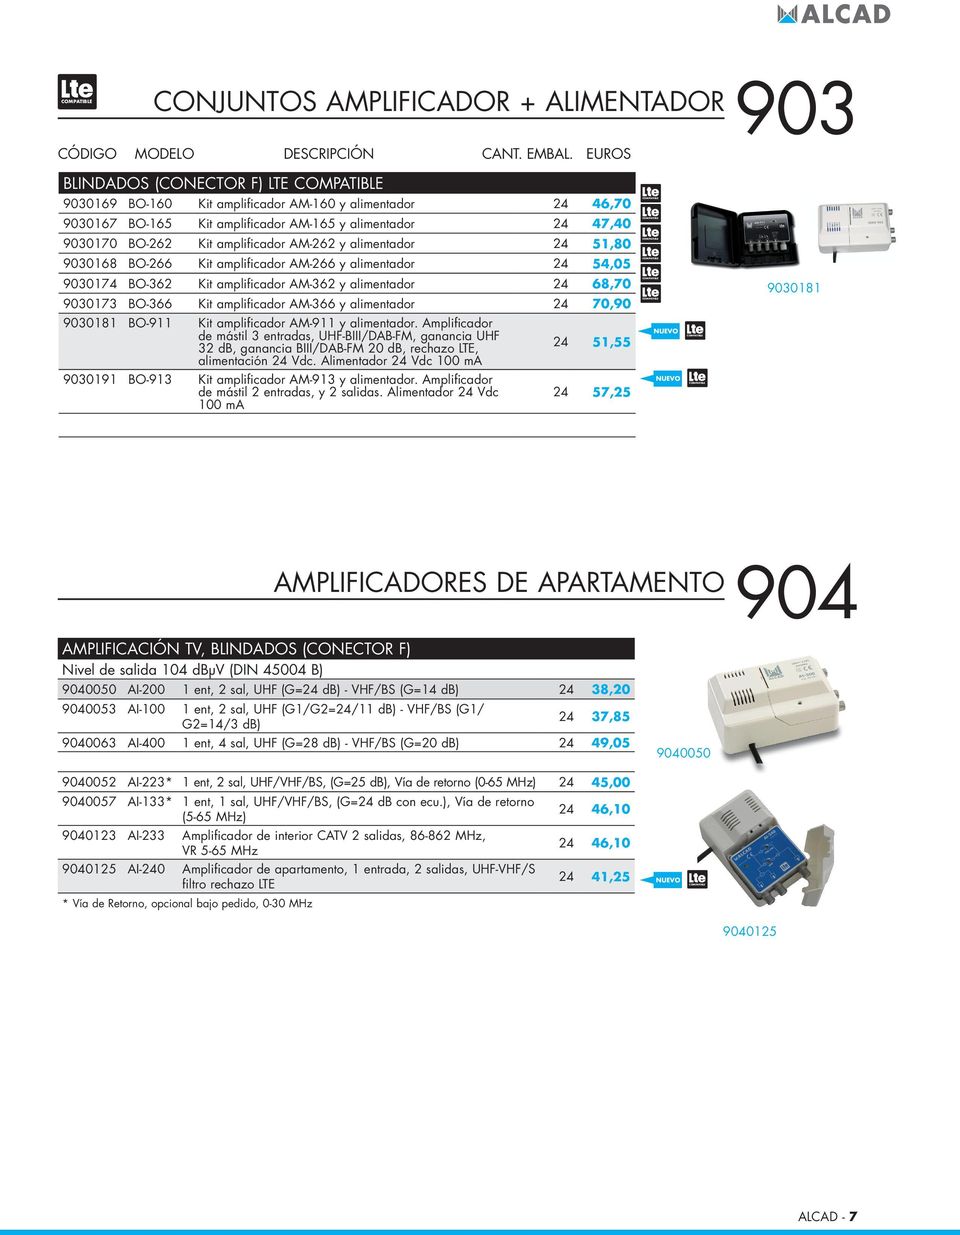 amplificador AM-366 y alimentador 24 70,90 9030181 9030181 BO-911 Kit amplificador AM-911 y alimentador.